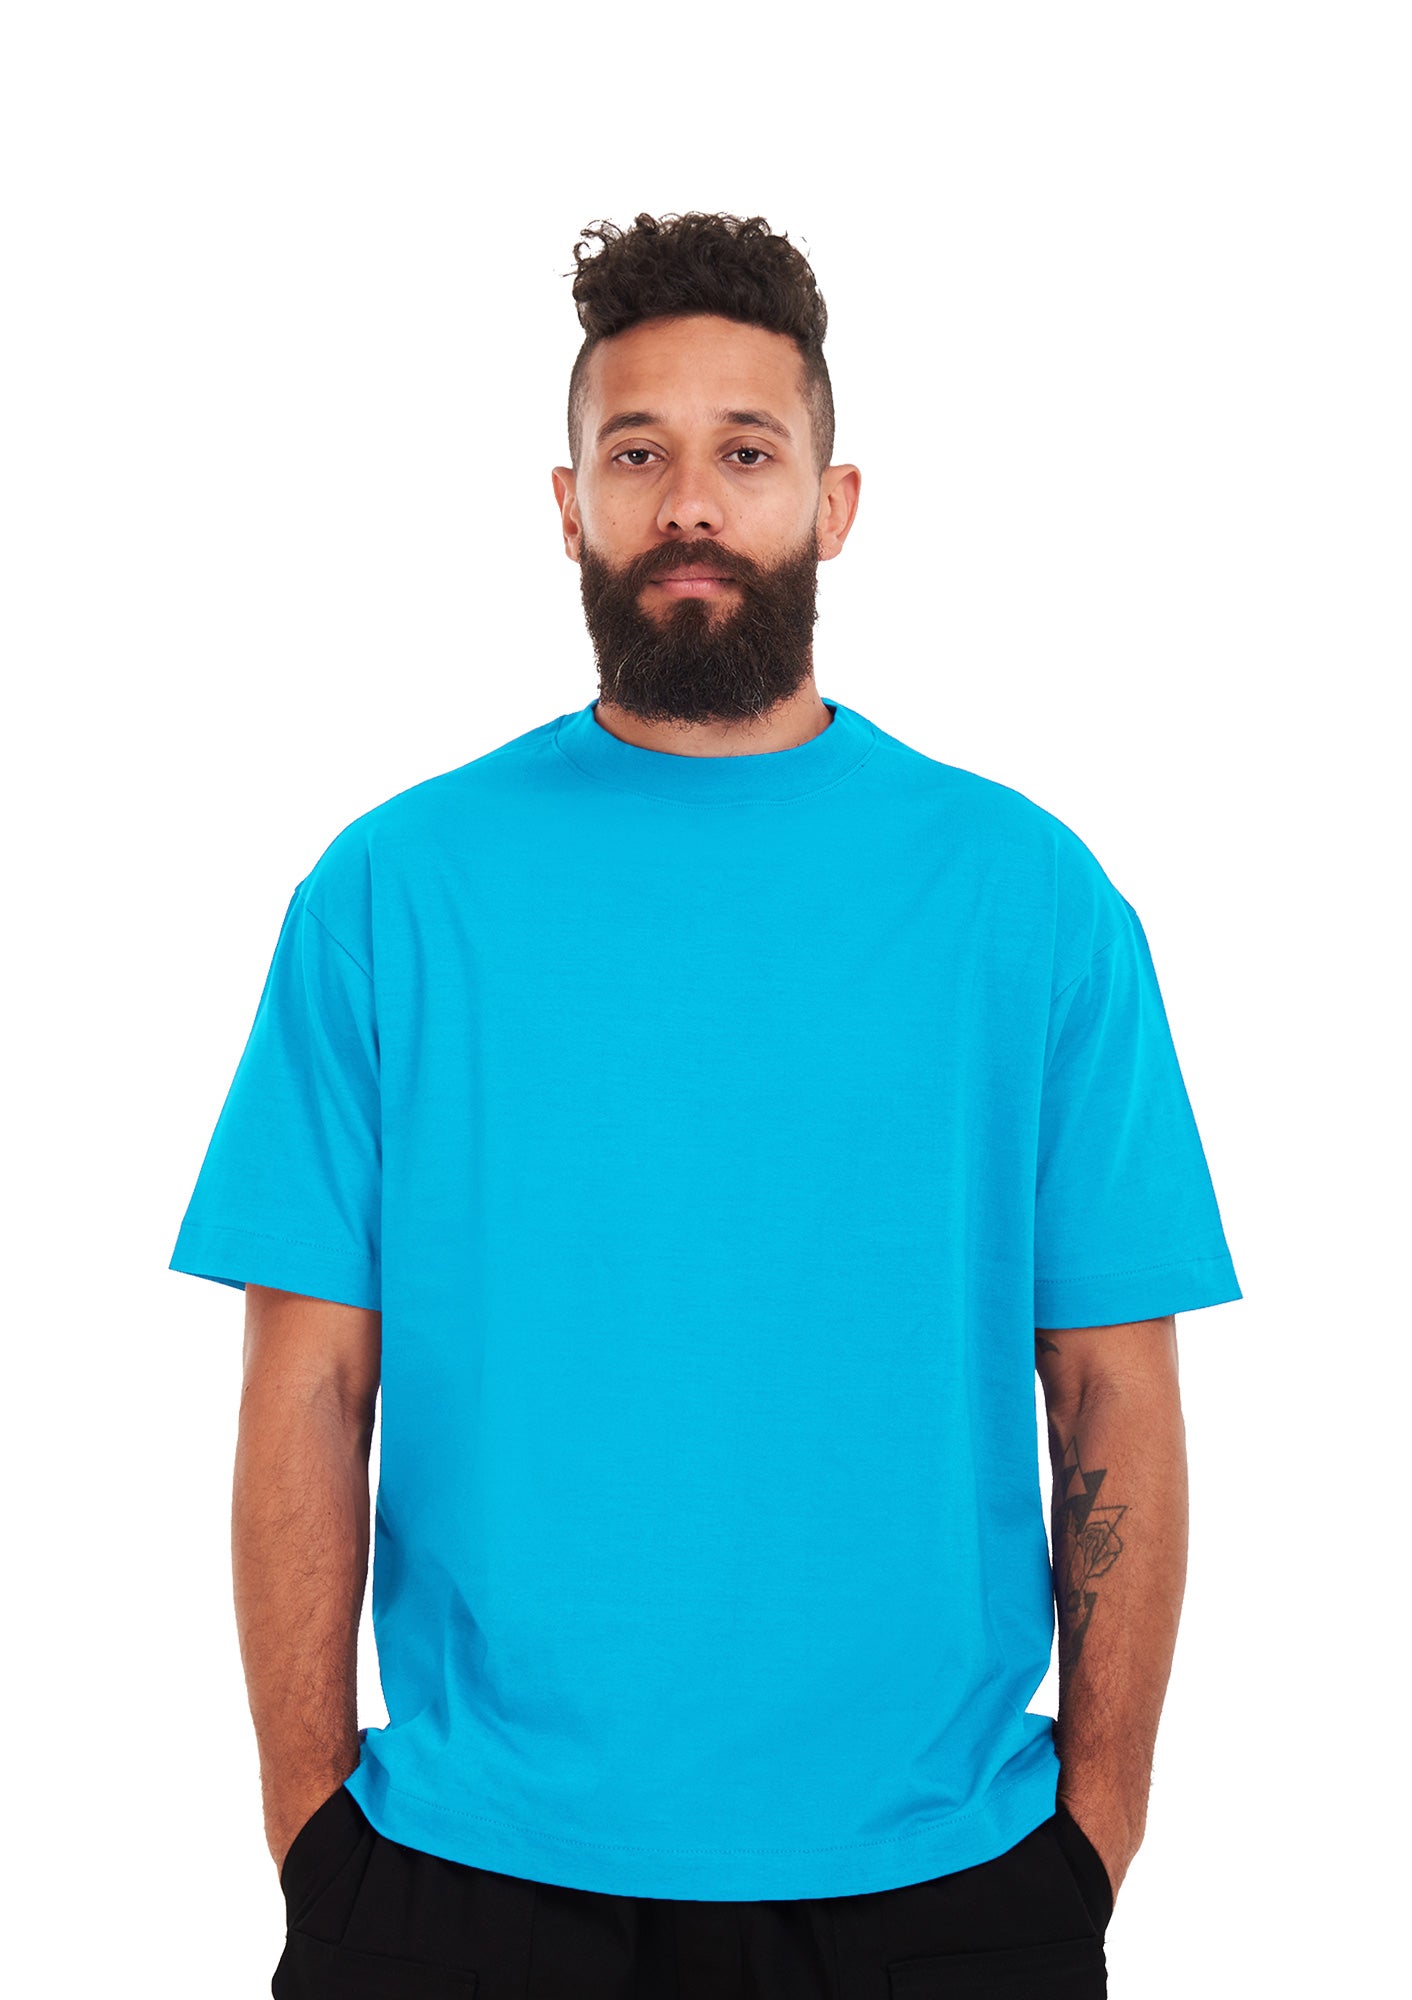 Oversized plain L Blue T-shirt .